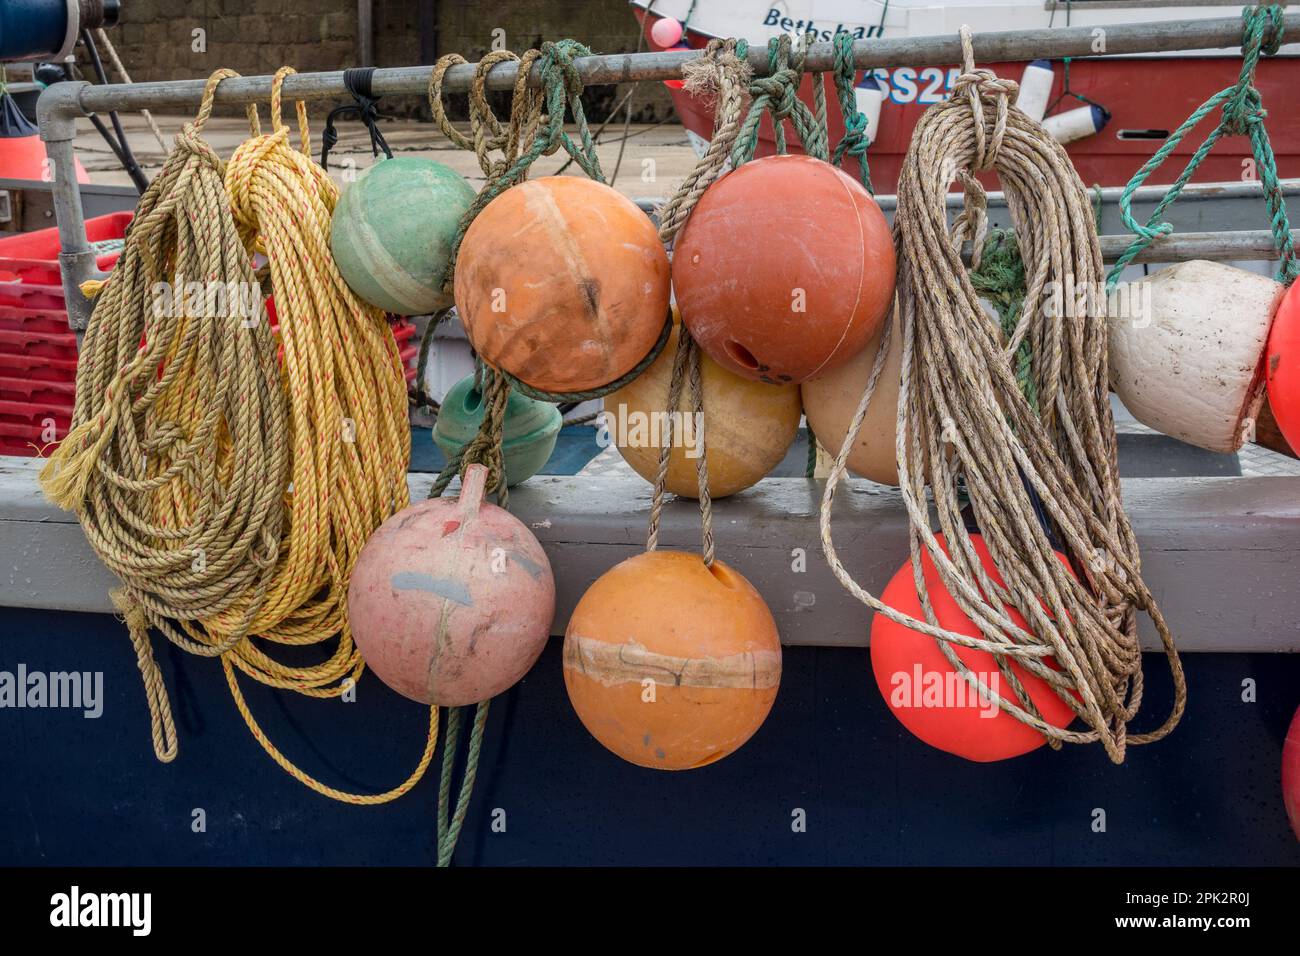 Cordes, flotteurs et bouées, matériel de pêche sur le côté d'un bateau à St. Port d'Ives, Cornwall, Angleterre, Royaume-Uni Banque D'Images